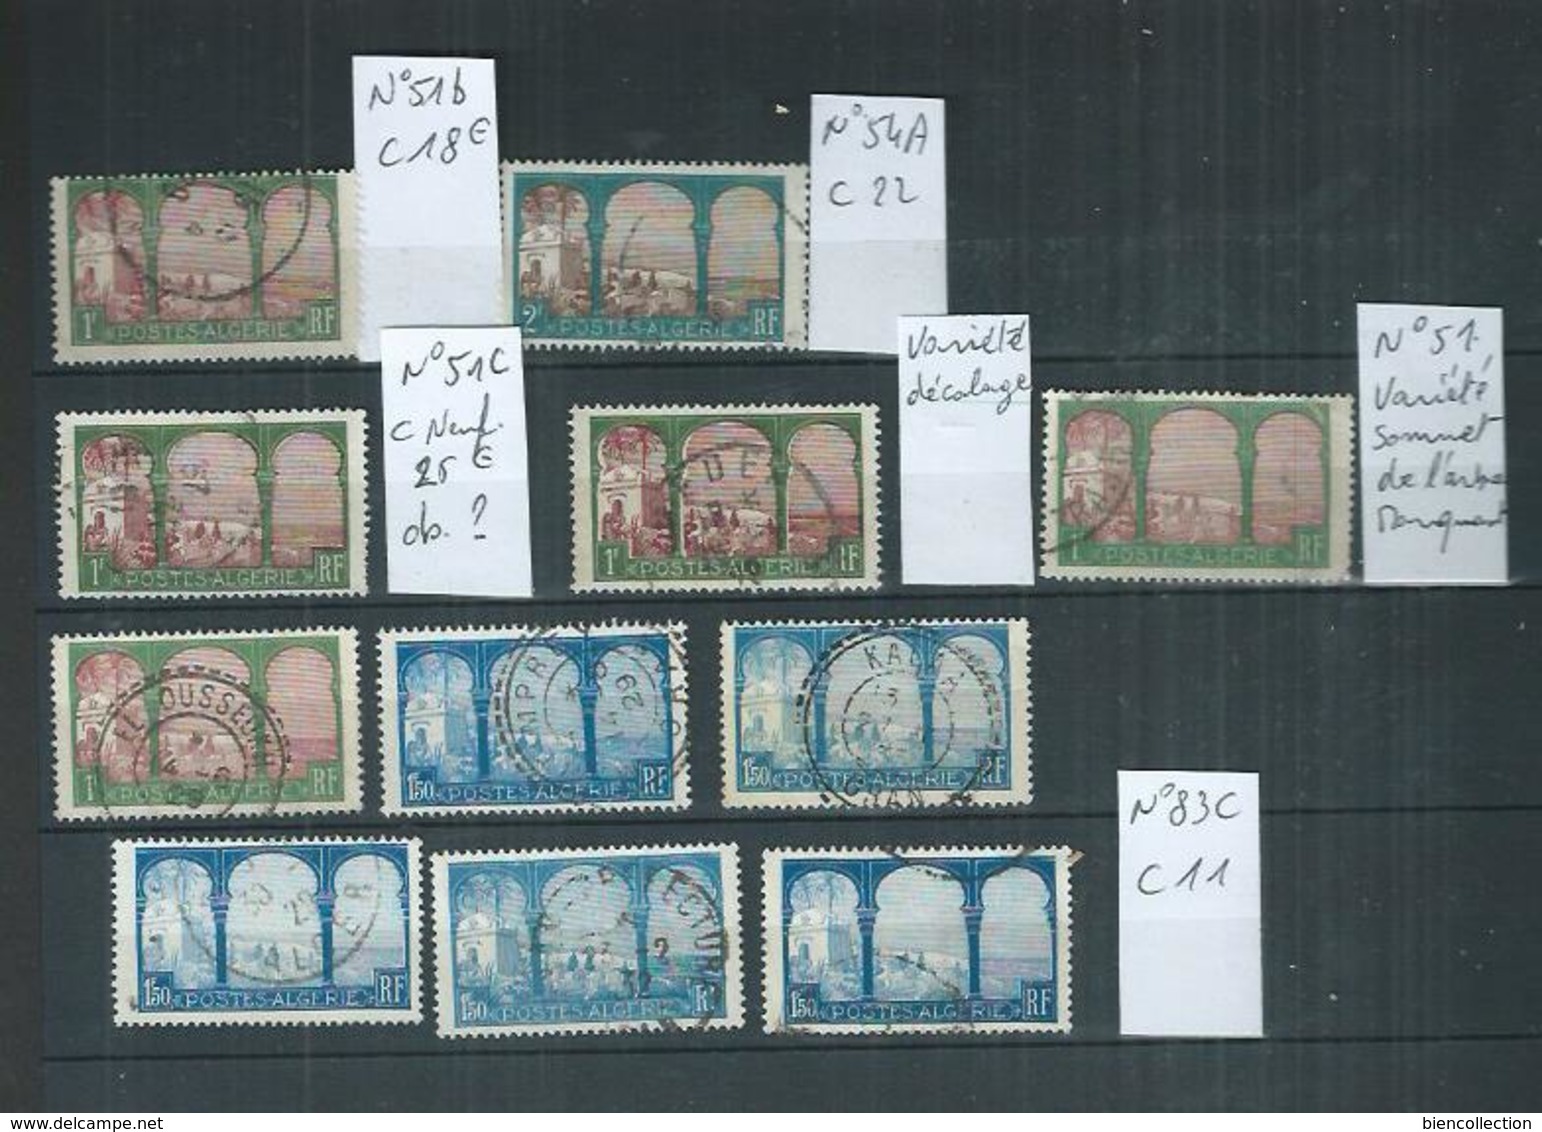 Algérie. Petit stock de timbres oblitérés dont variété 5eme arbre,arbre coupé ou autres, cote > 1000€